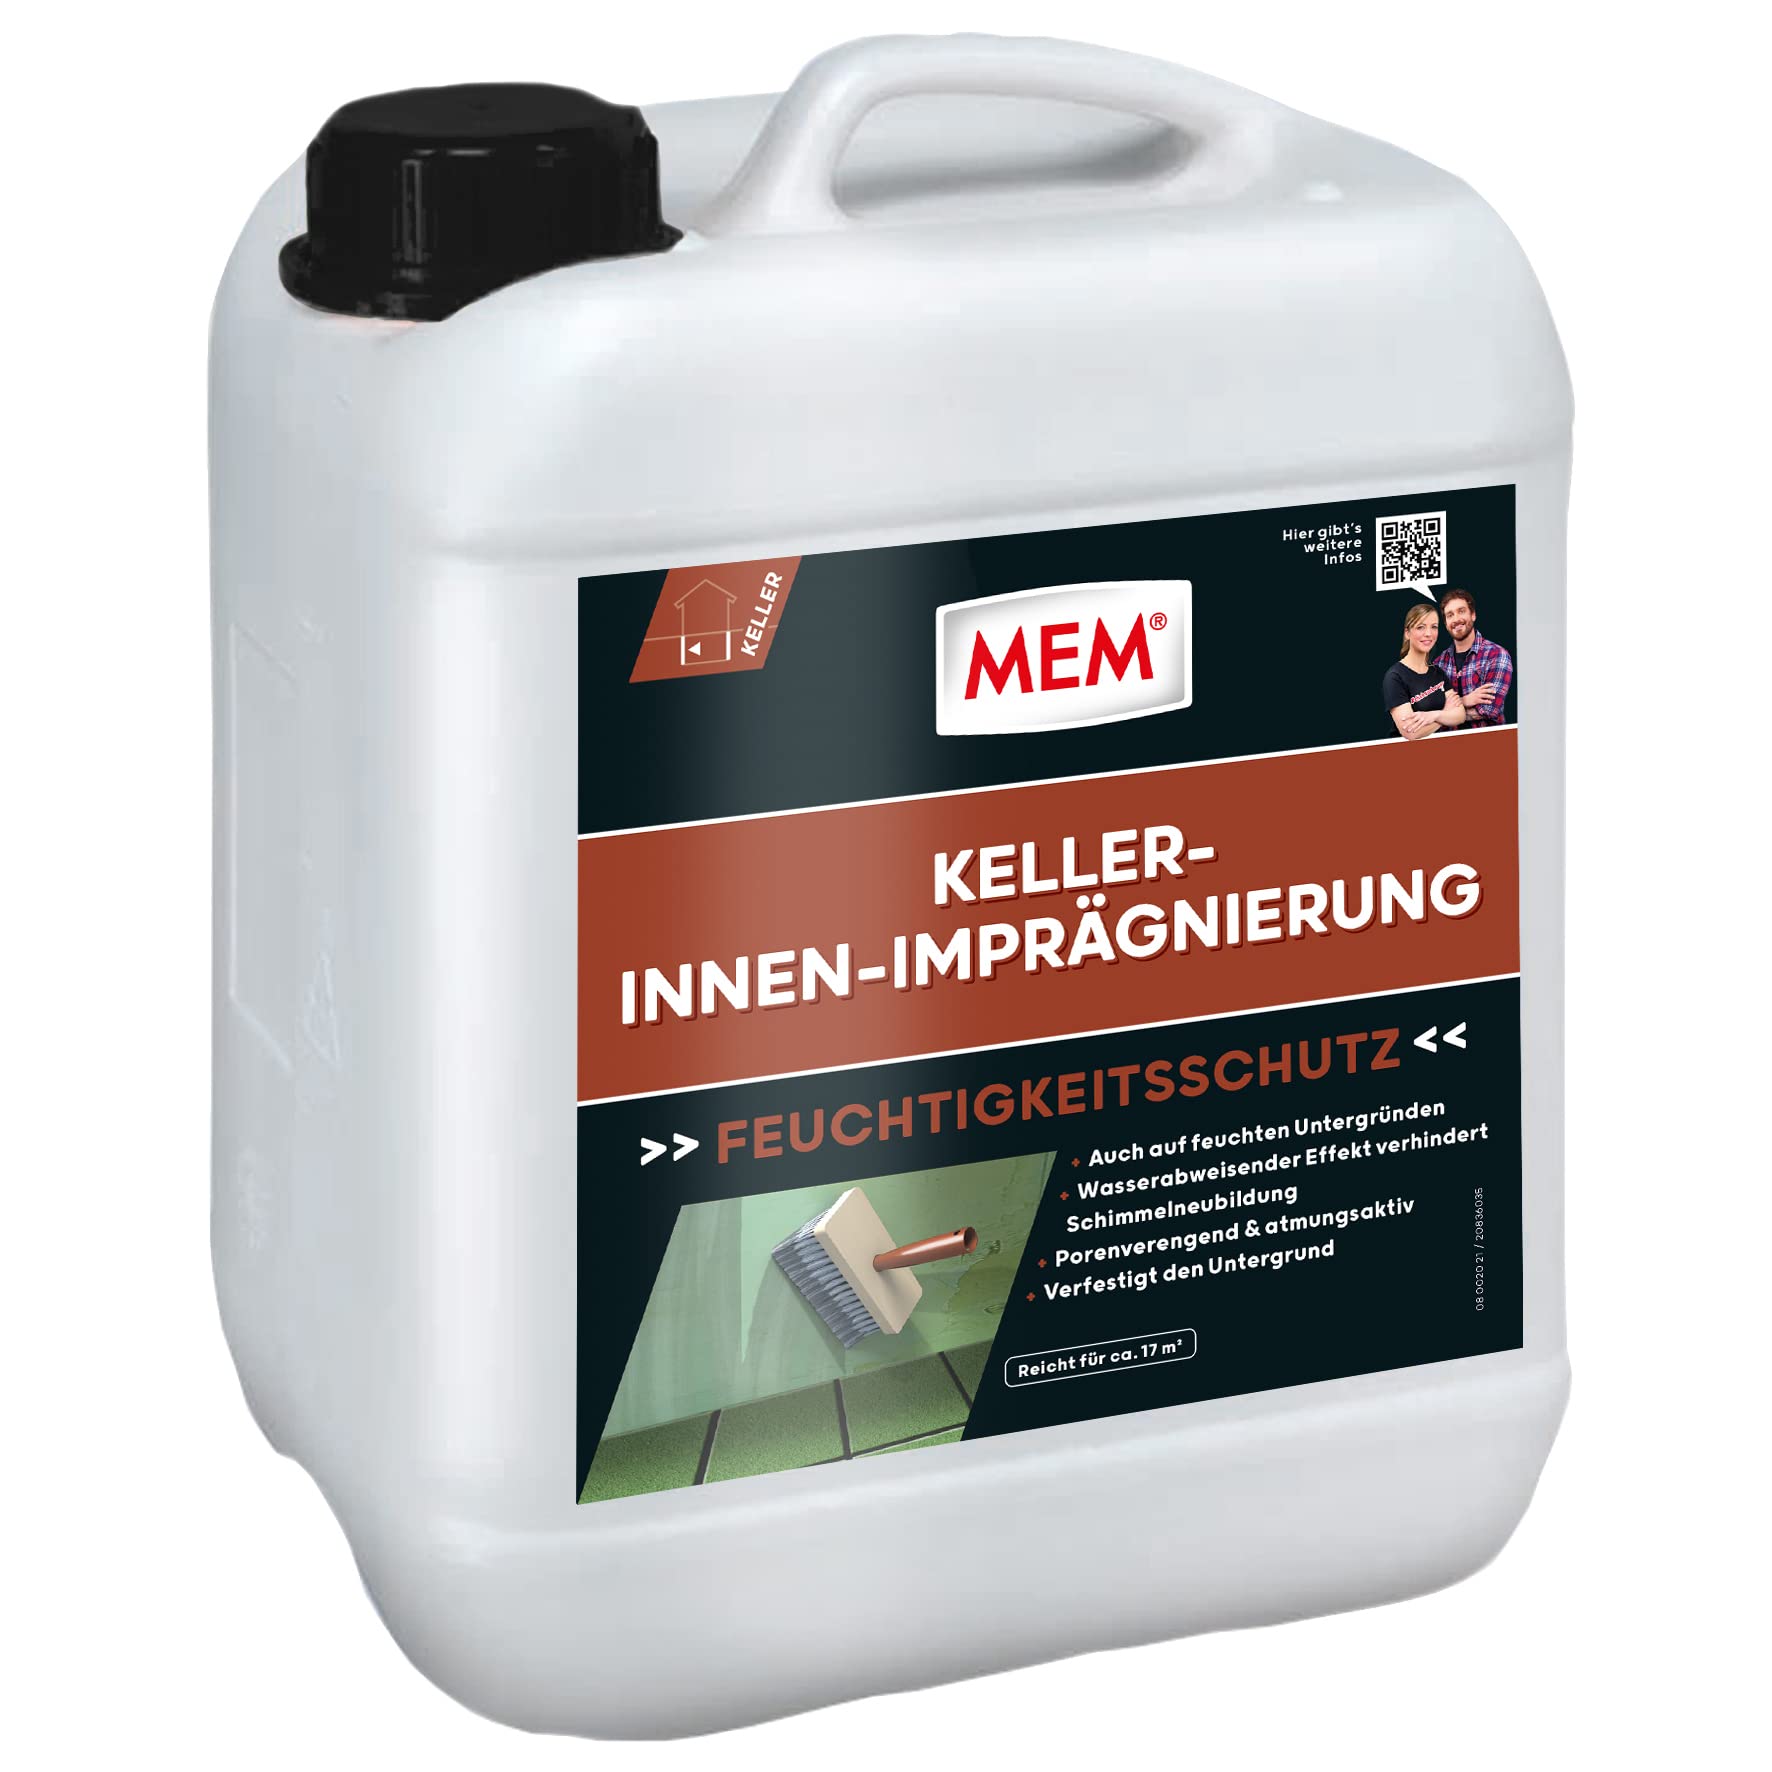 MEM Keller-Innen-Imprägnierung, Zur Abdichtung von feuchten und nassen Flächen, Für verschiedene Untergründe, Lösemittelfrei, 5 l Behälter